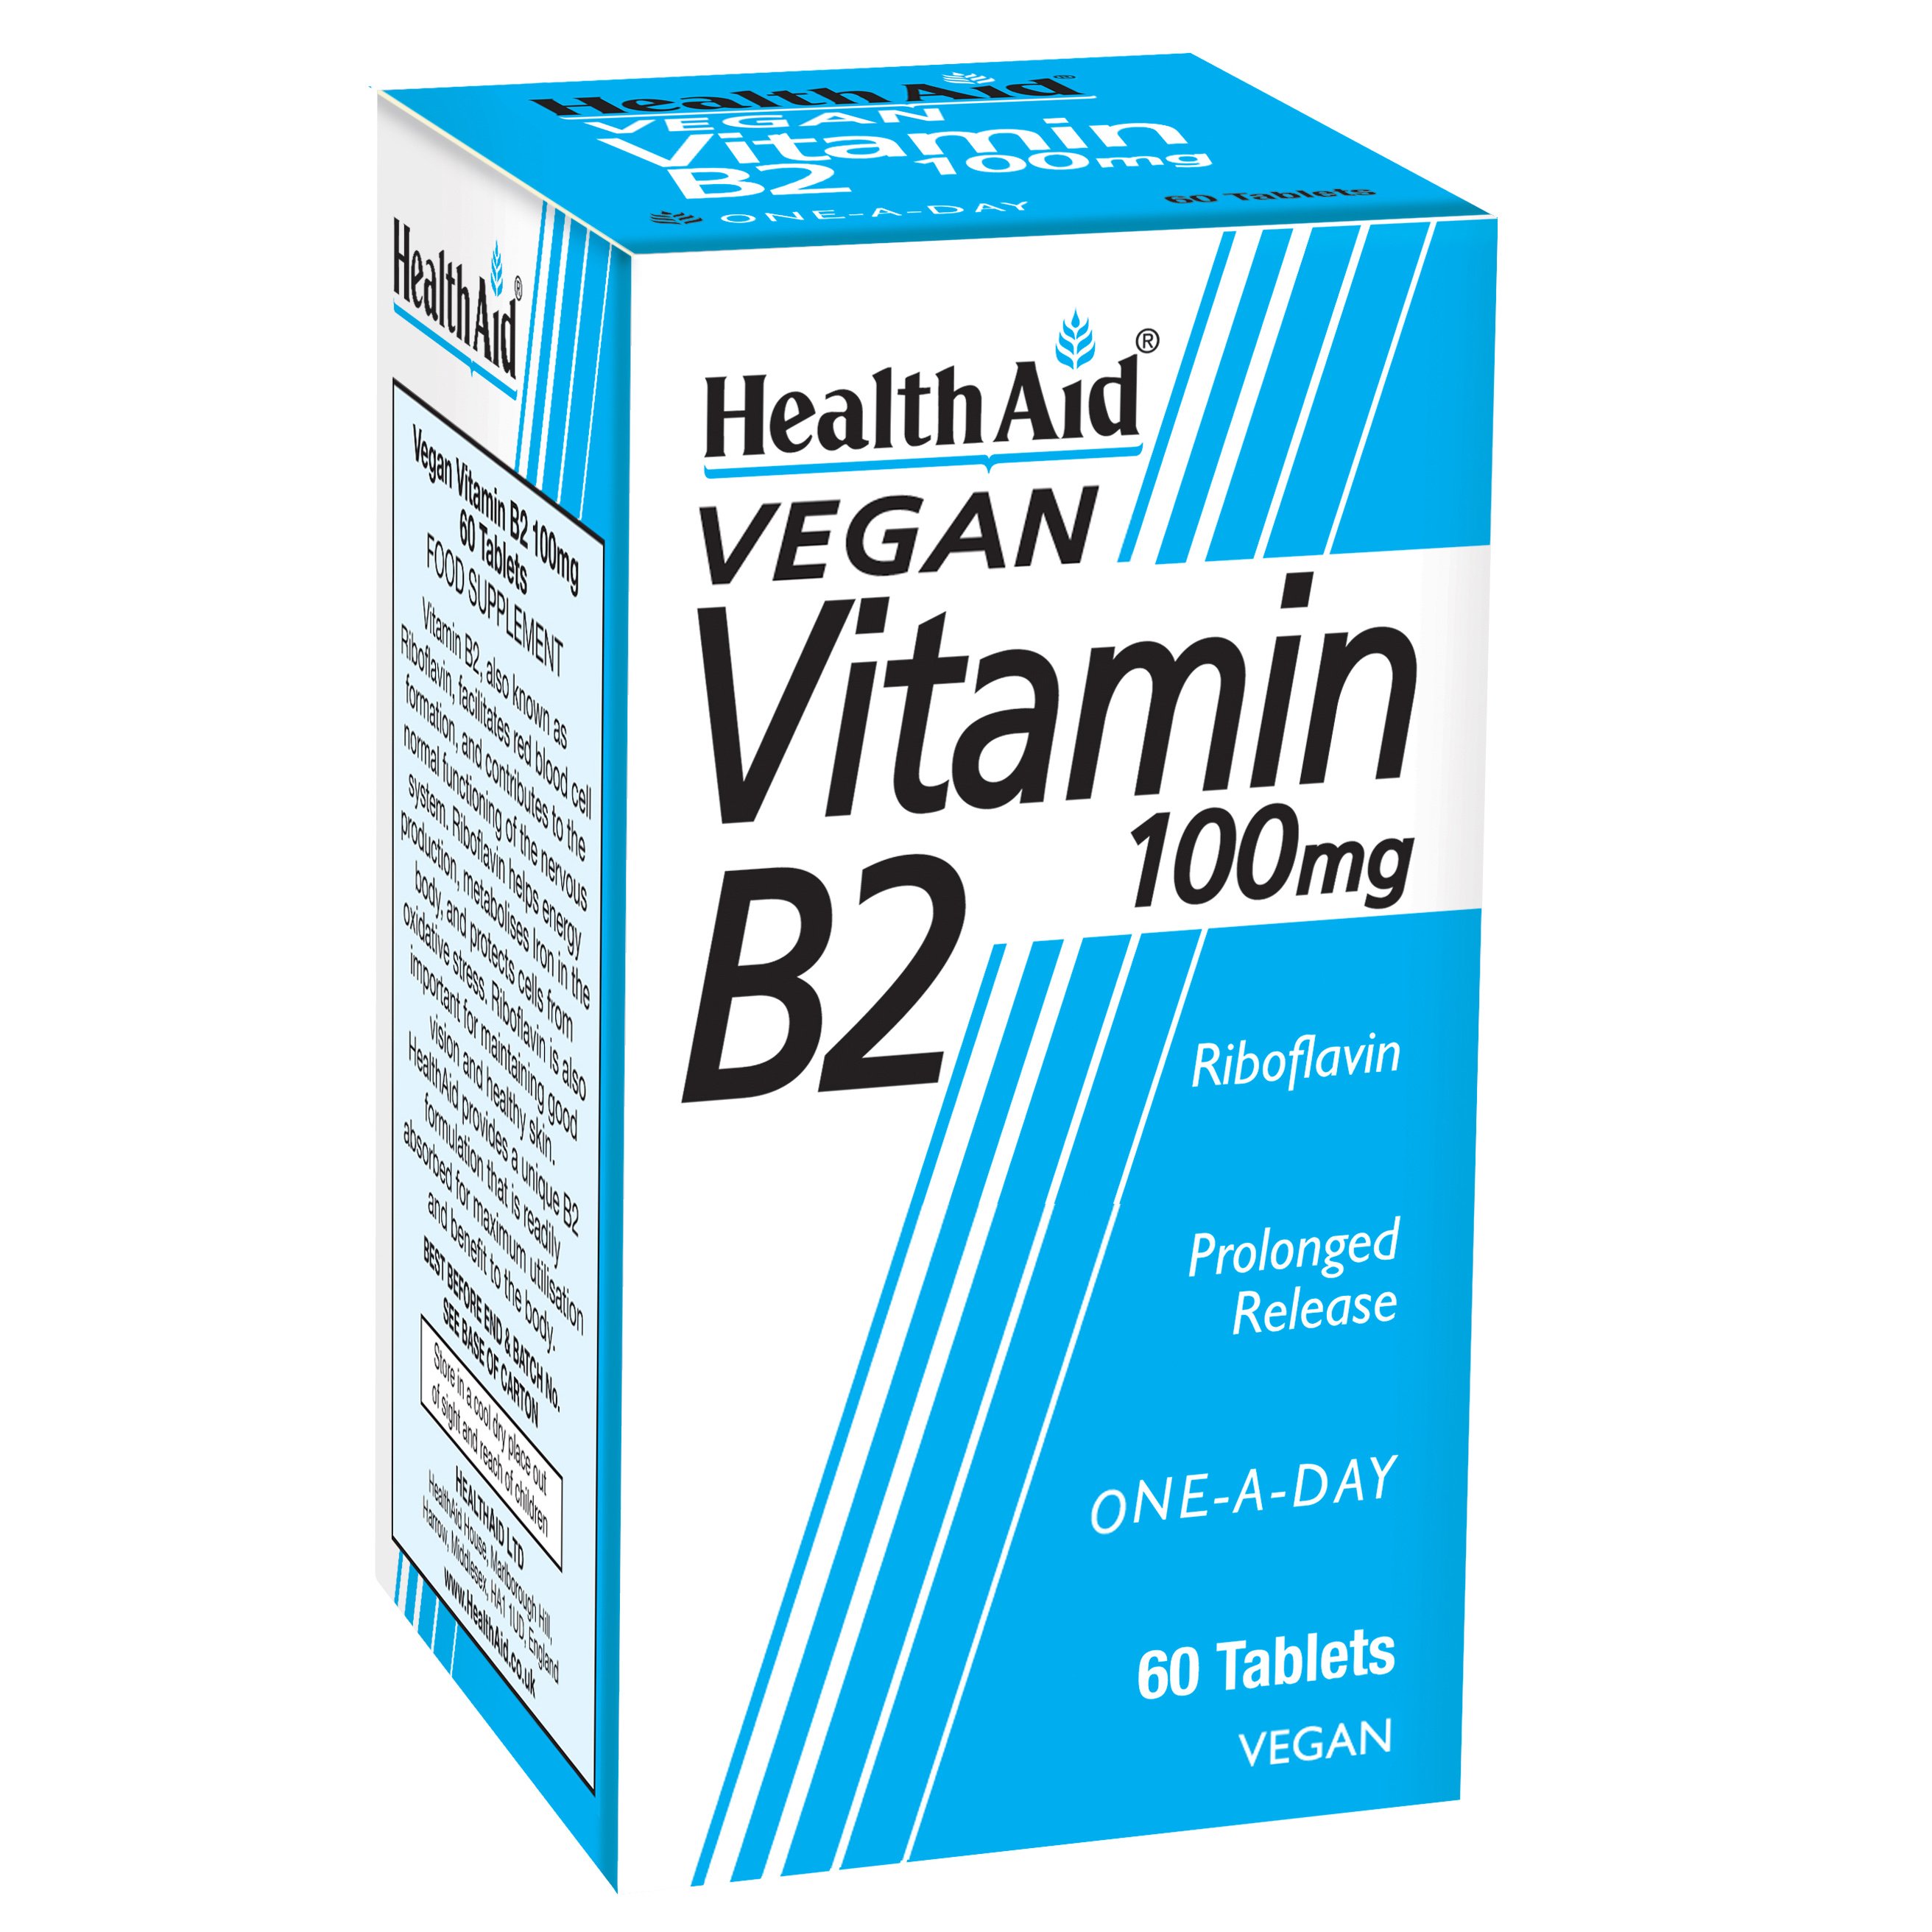 Health Aid Vitamin B2 (Riboflavin) 100mg – Prolonged Release Απαραίτητη για το Σχηματισμό Ερυθρών Αιμοσφαιρίων 60 tabs